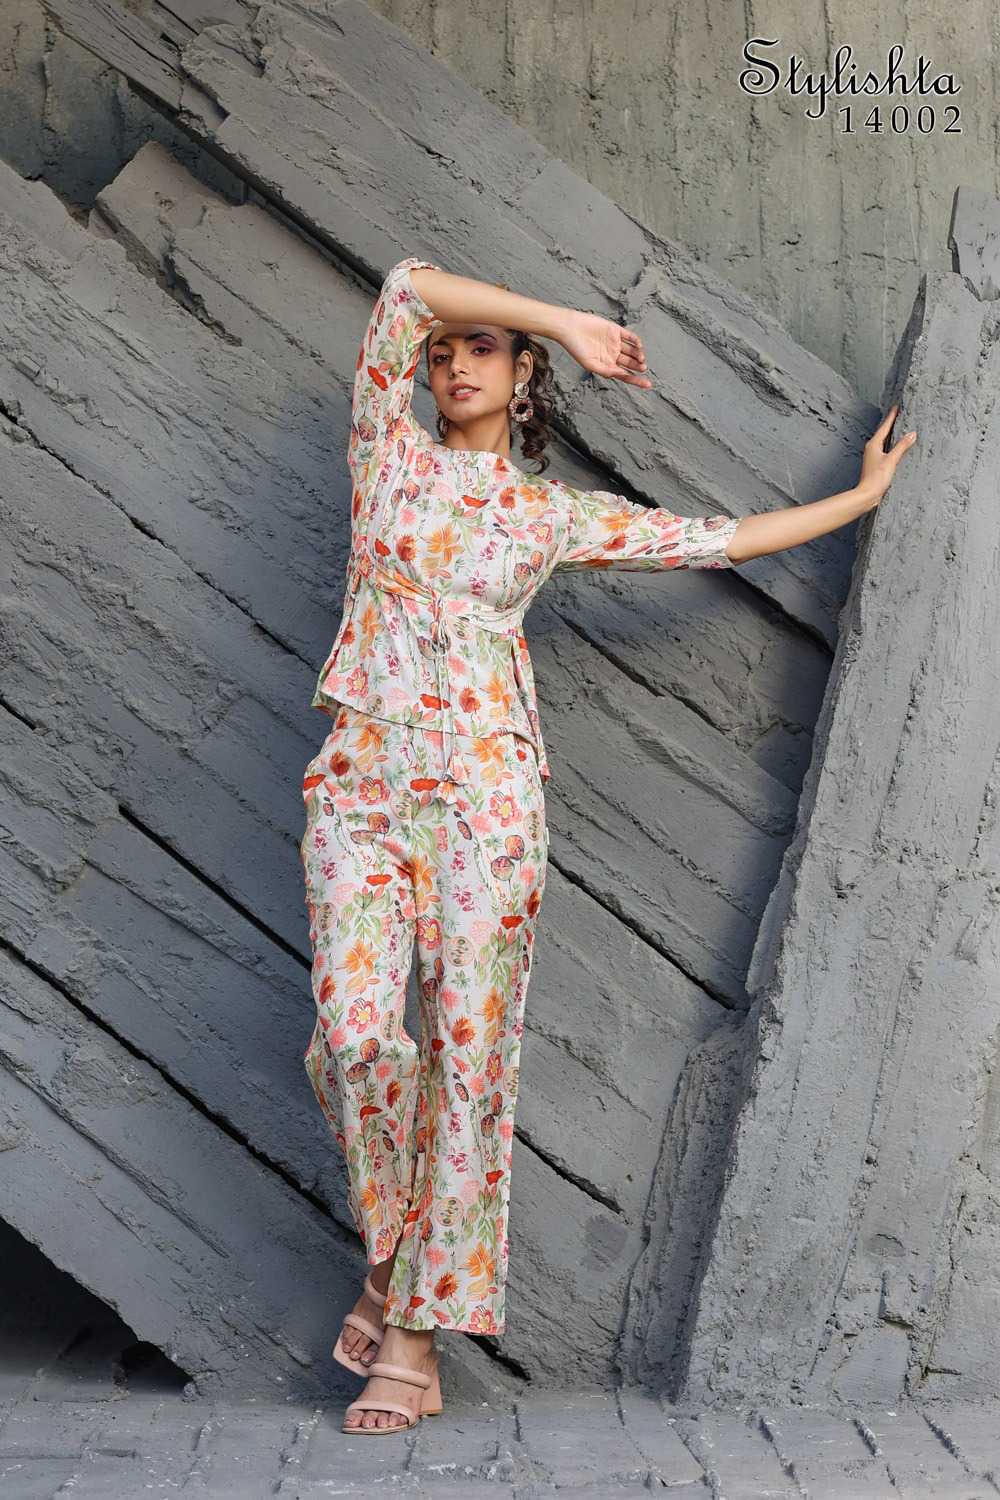 Teal Floral Print Jumpsuit - Wide-Leg Jumpsuit - V-Neck Jumpsuit - Lulus